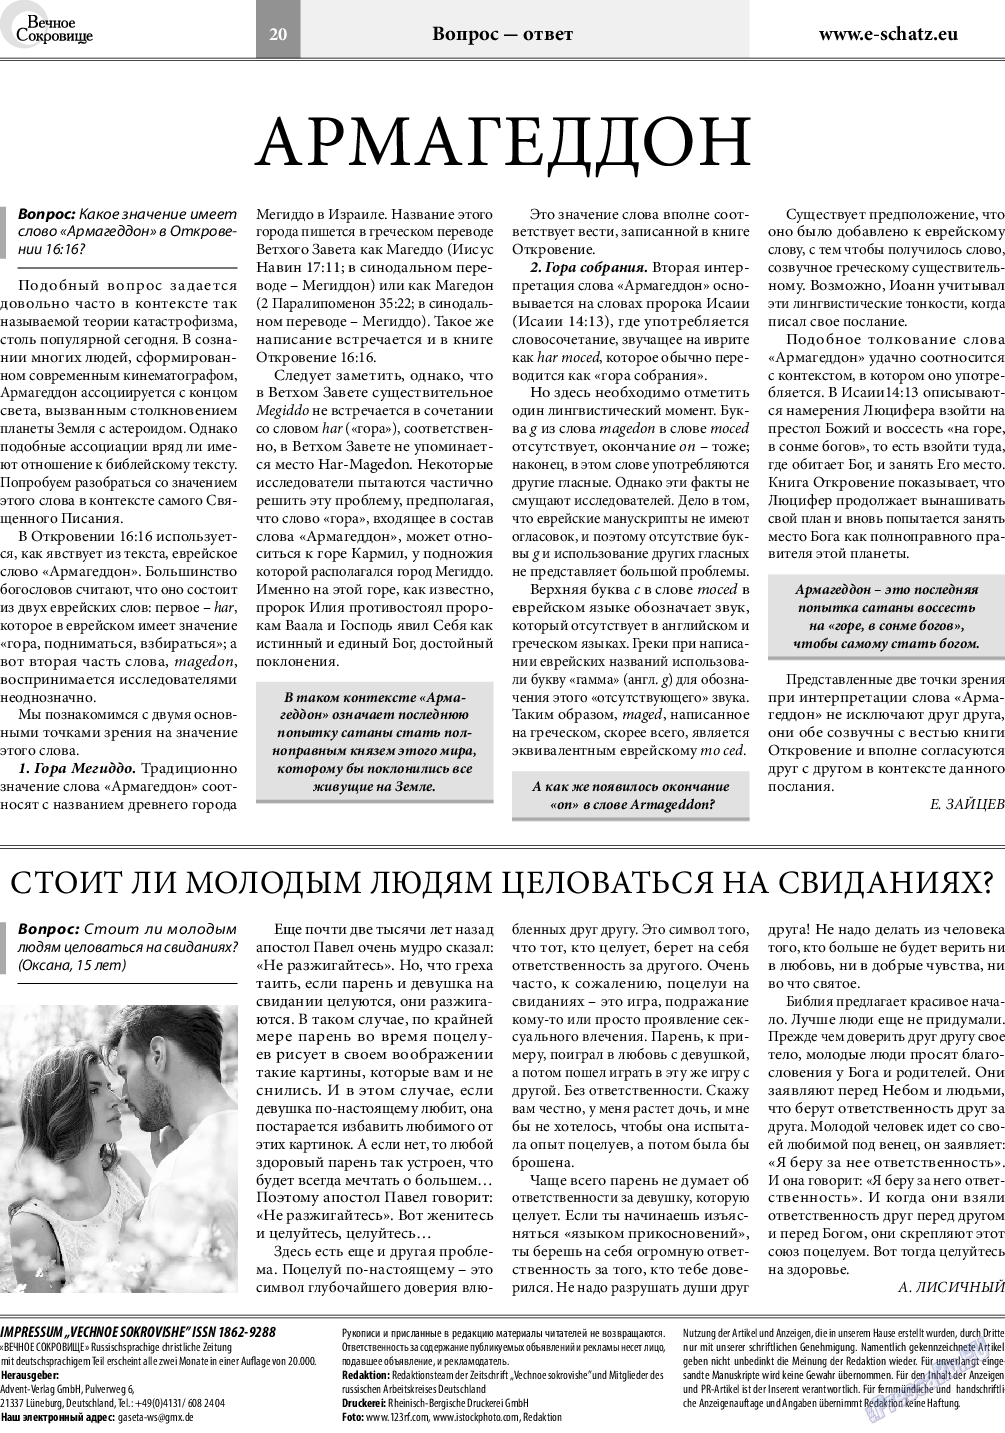 Вечное сокровище (газета). 2018 год, номер 4, стр. 20